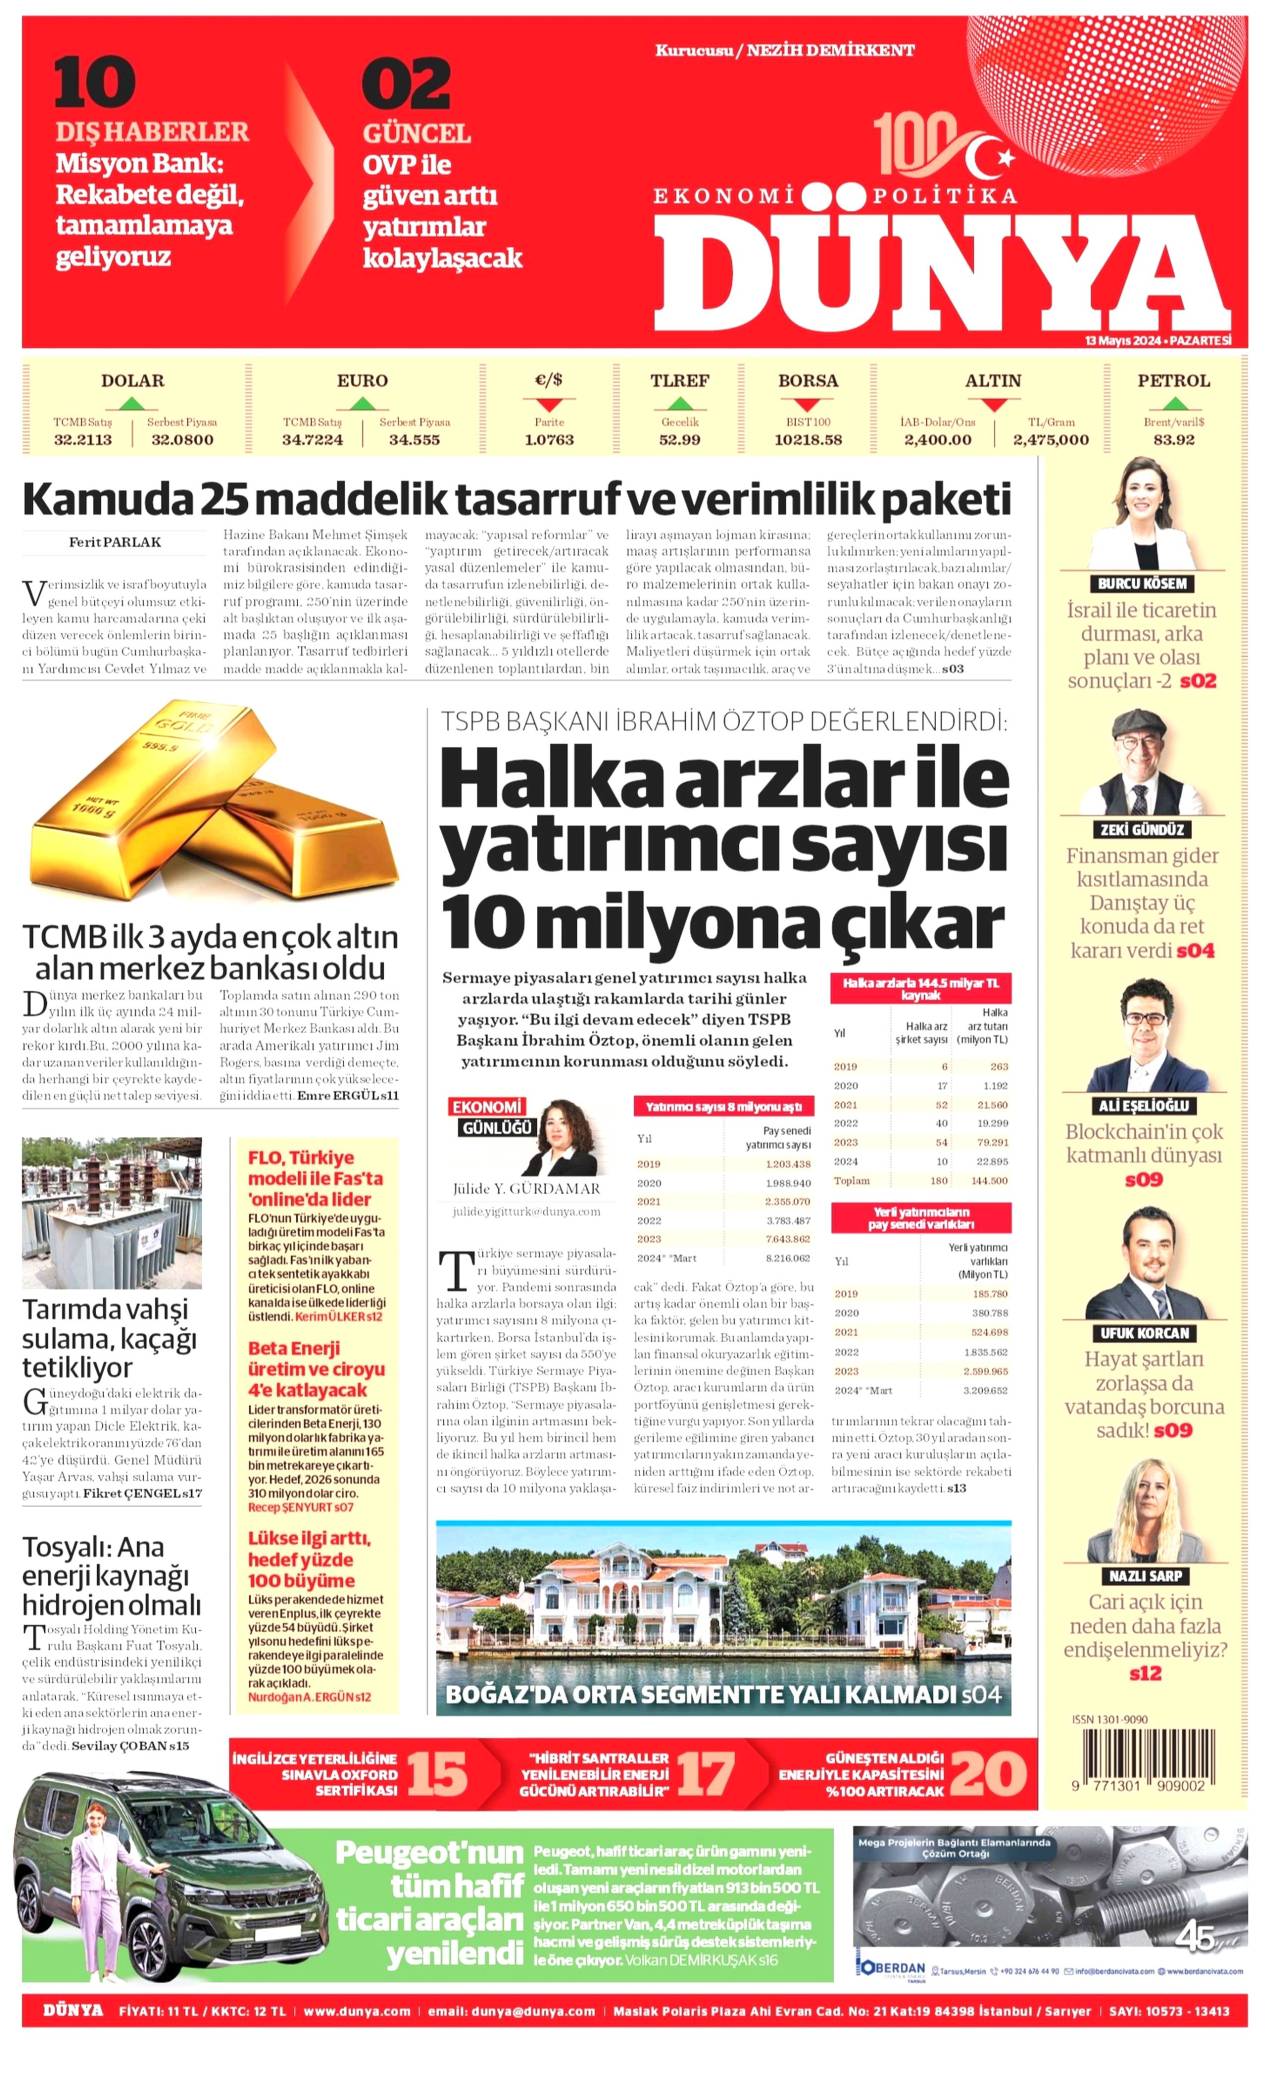  dunya Gazetesi